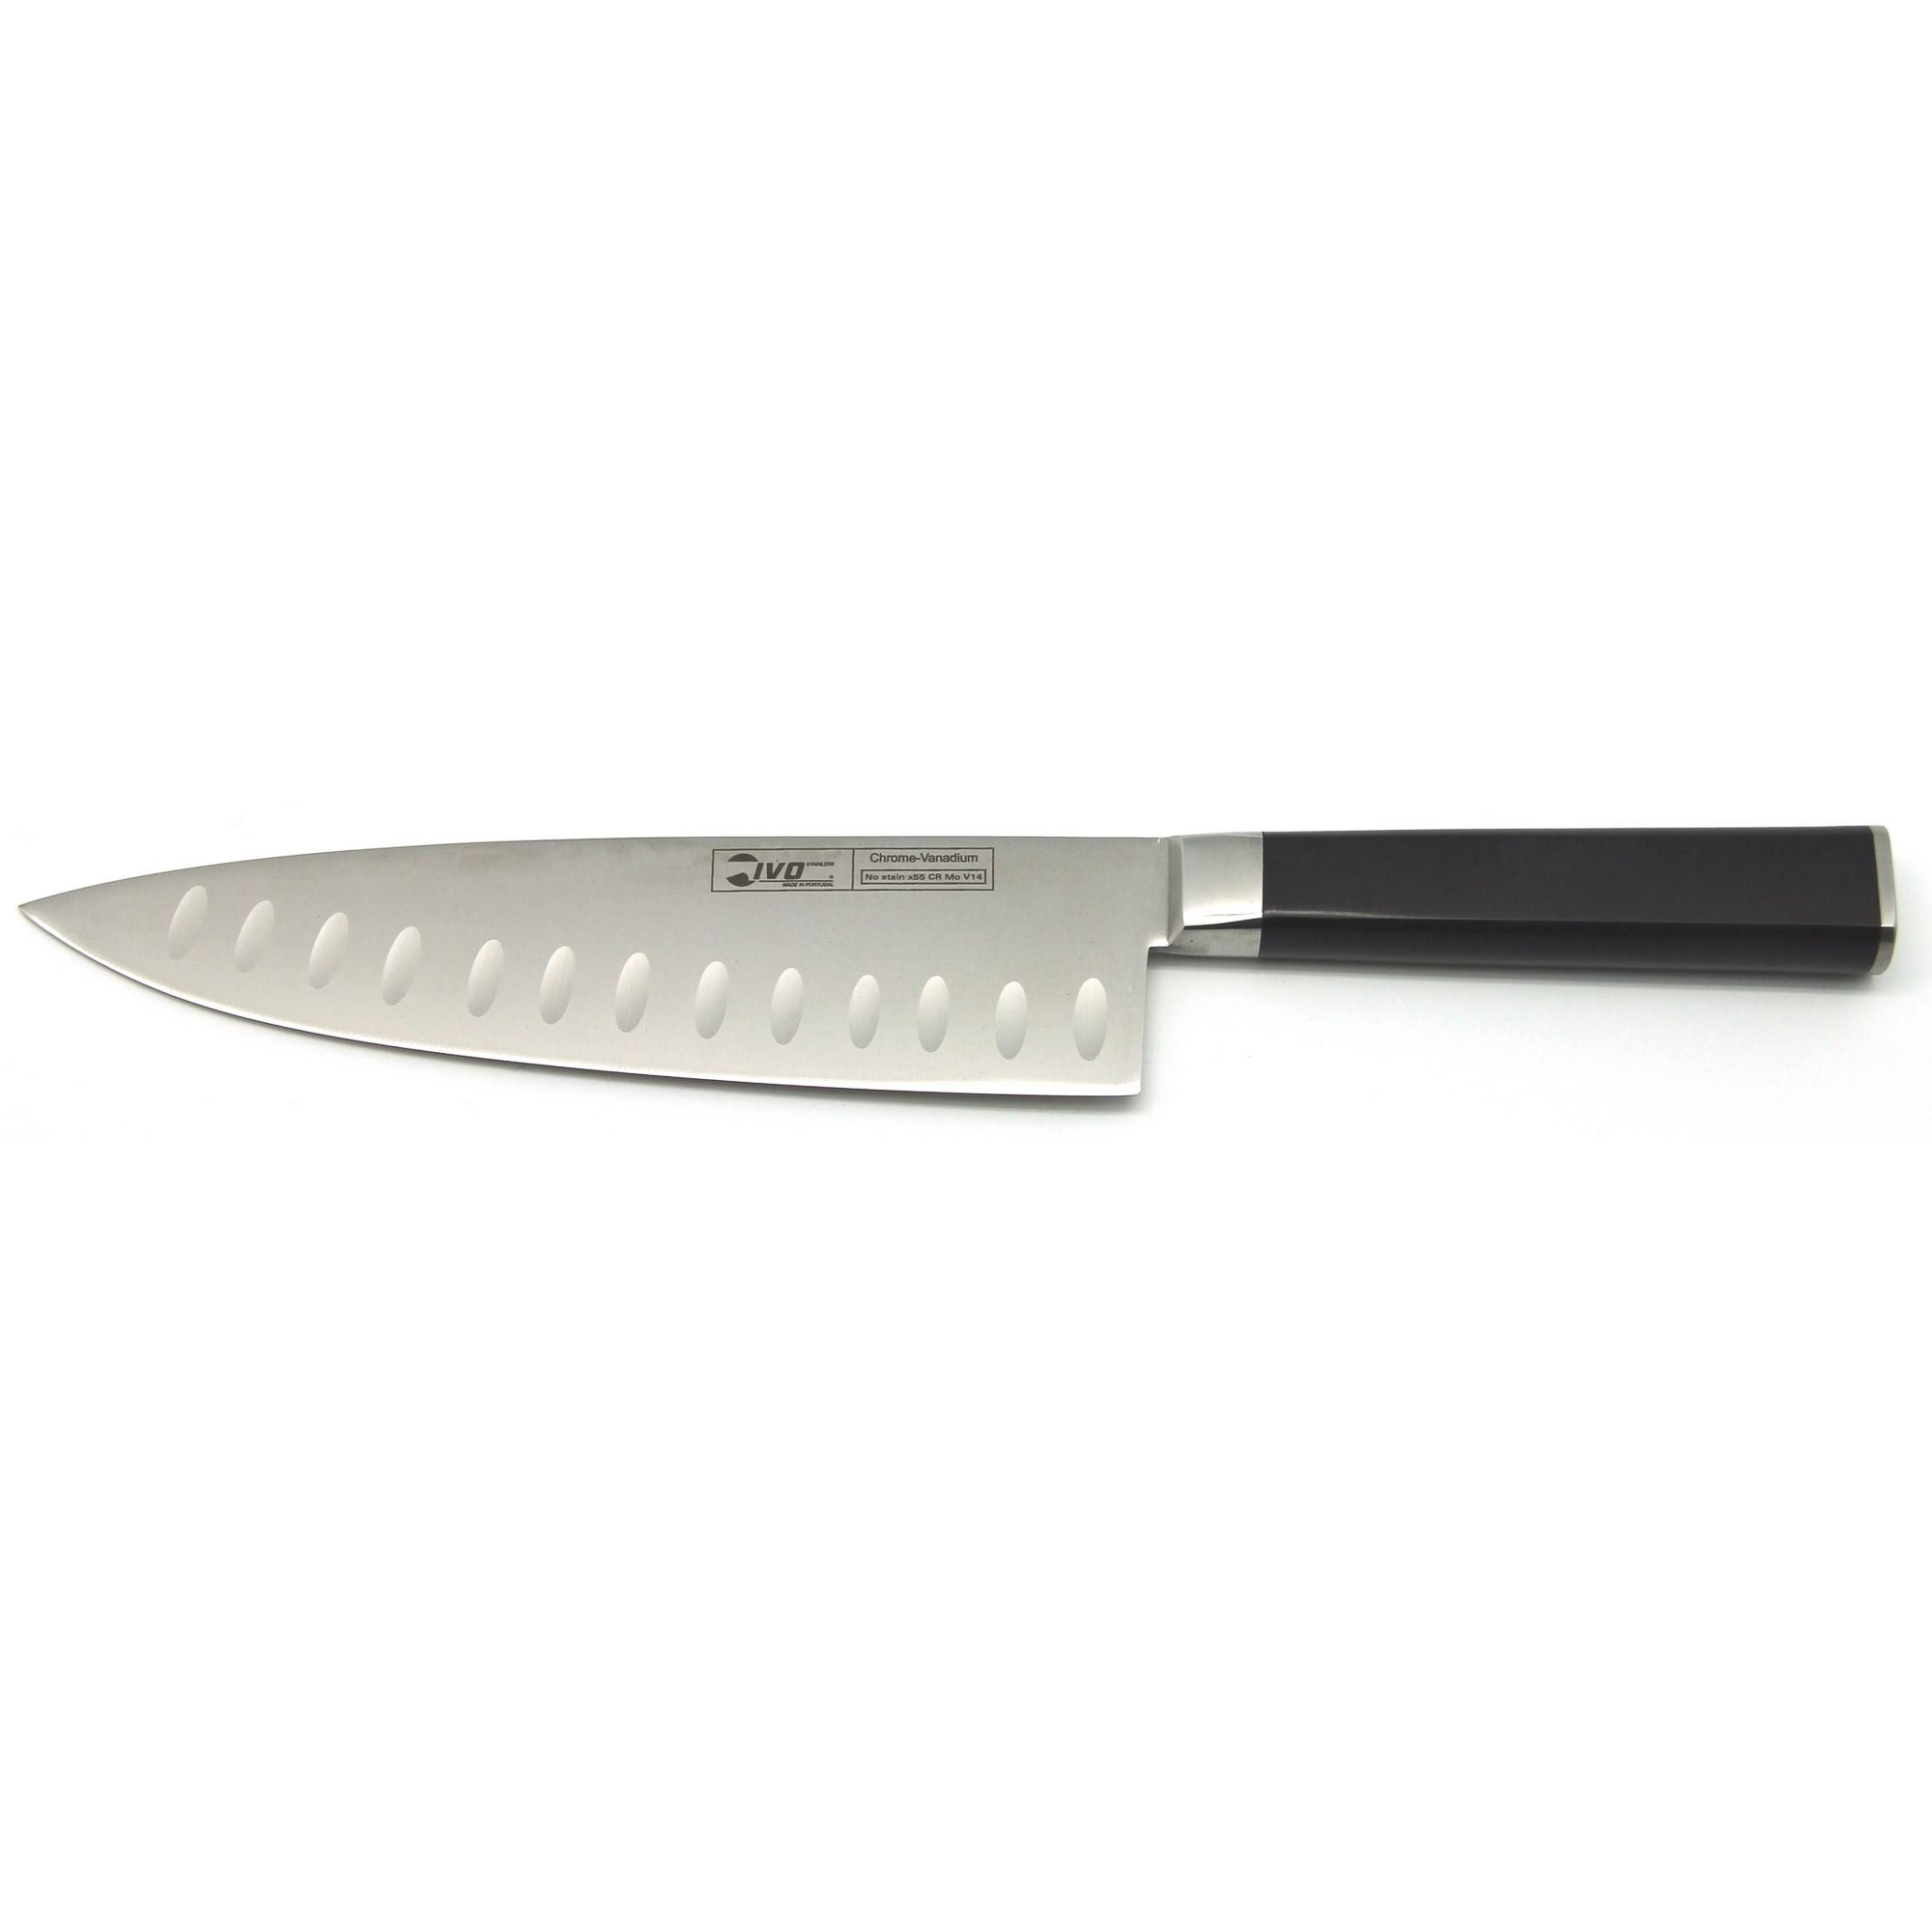 Нож поварской Ivo 43439.20 с канавками 20см нож разделочный 20см virtu black ivo